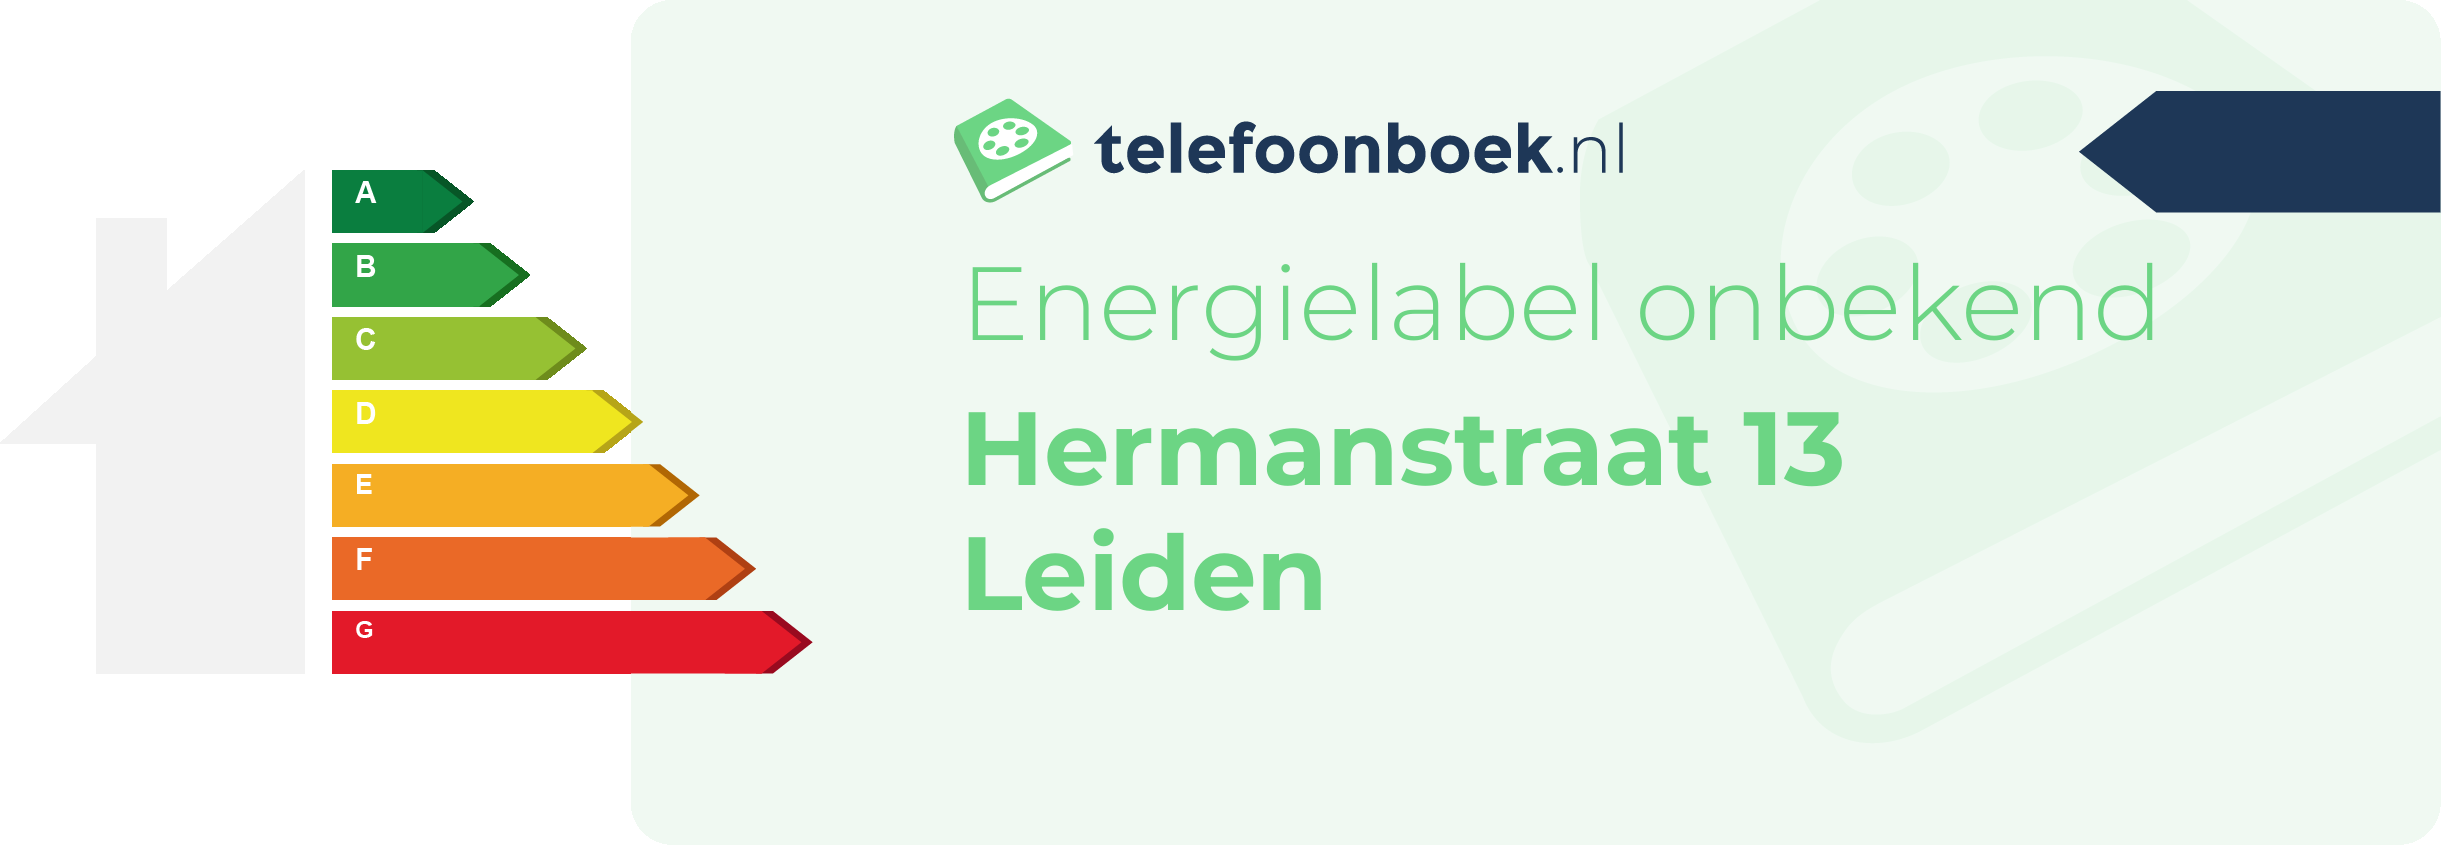 Energielabel Hermanstraat 13 Leiden